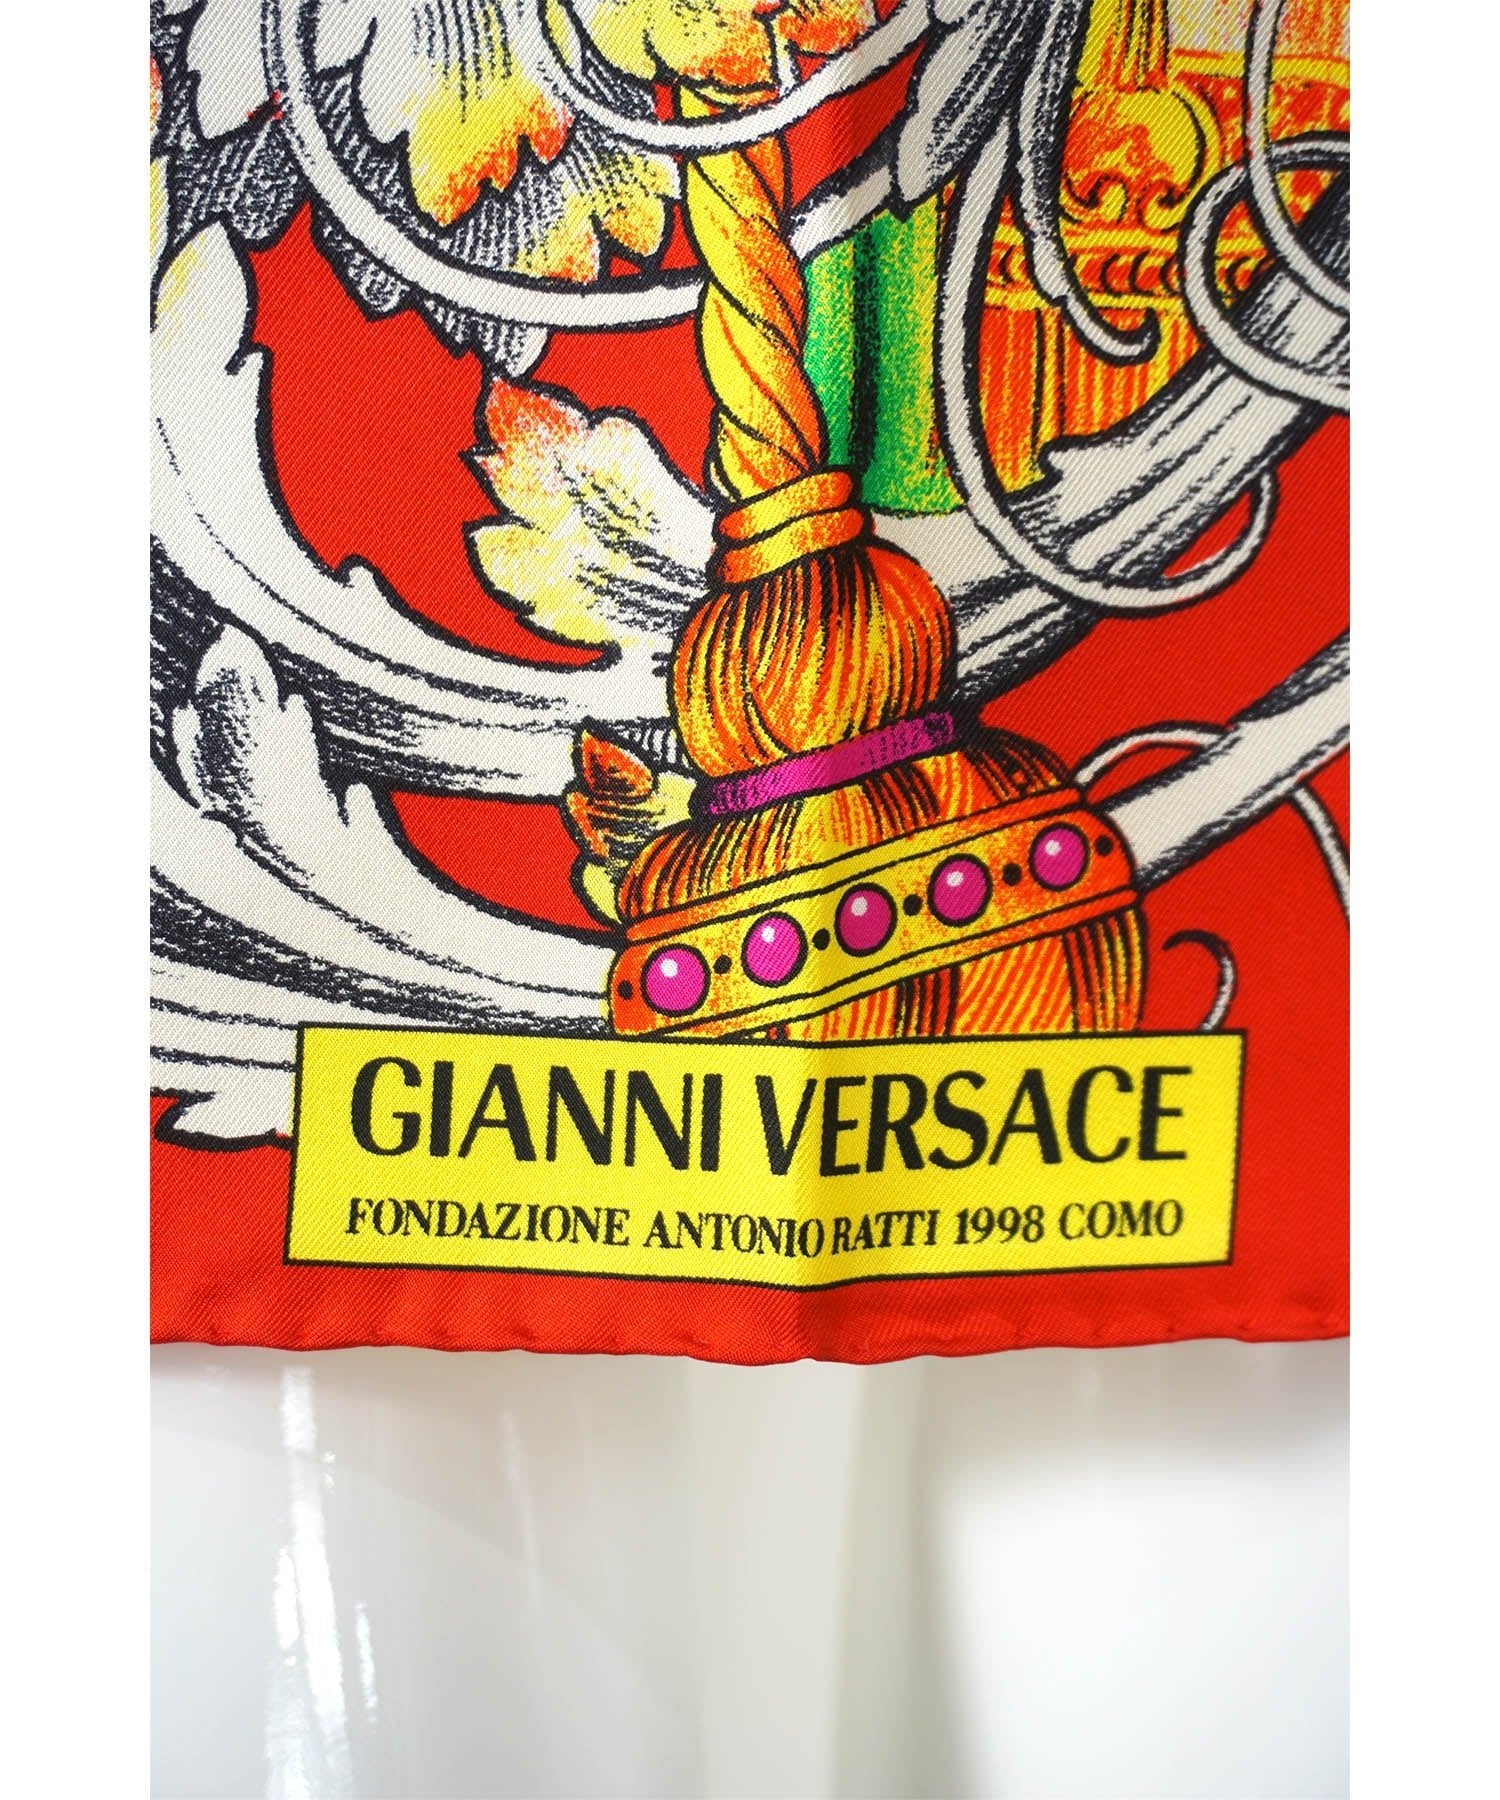 Gianni Versace Rare Vintage 1998 Fondazione Antonio Ratti Silk Scarf - Foxy Couture Carmel